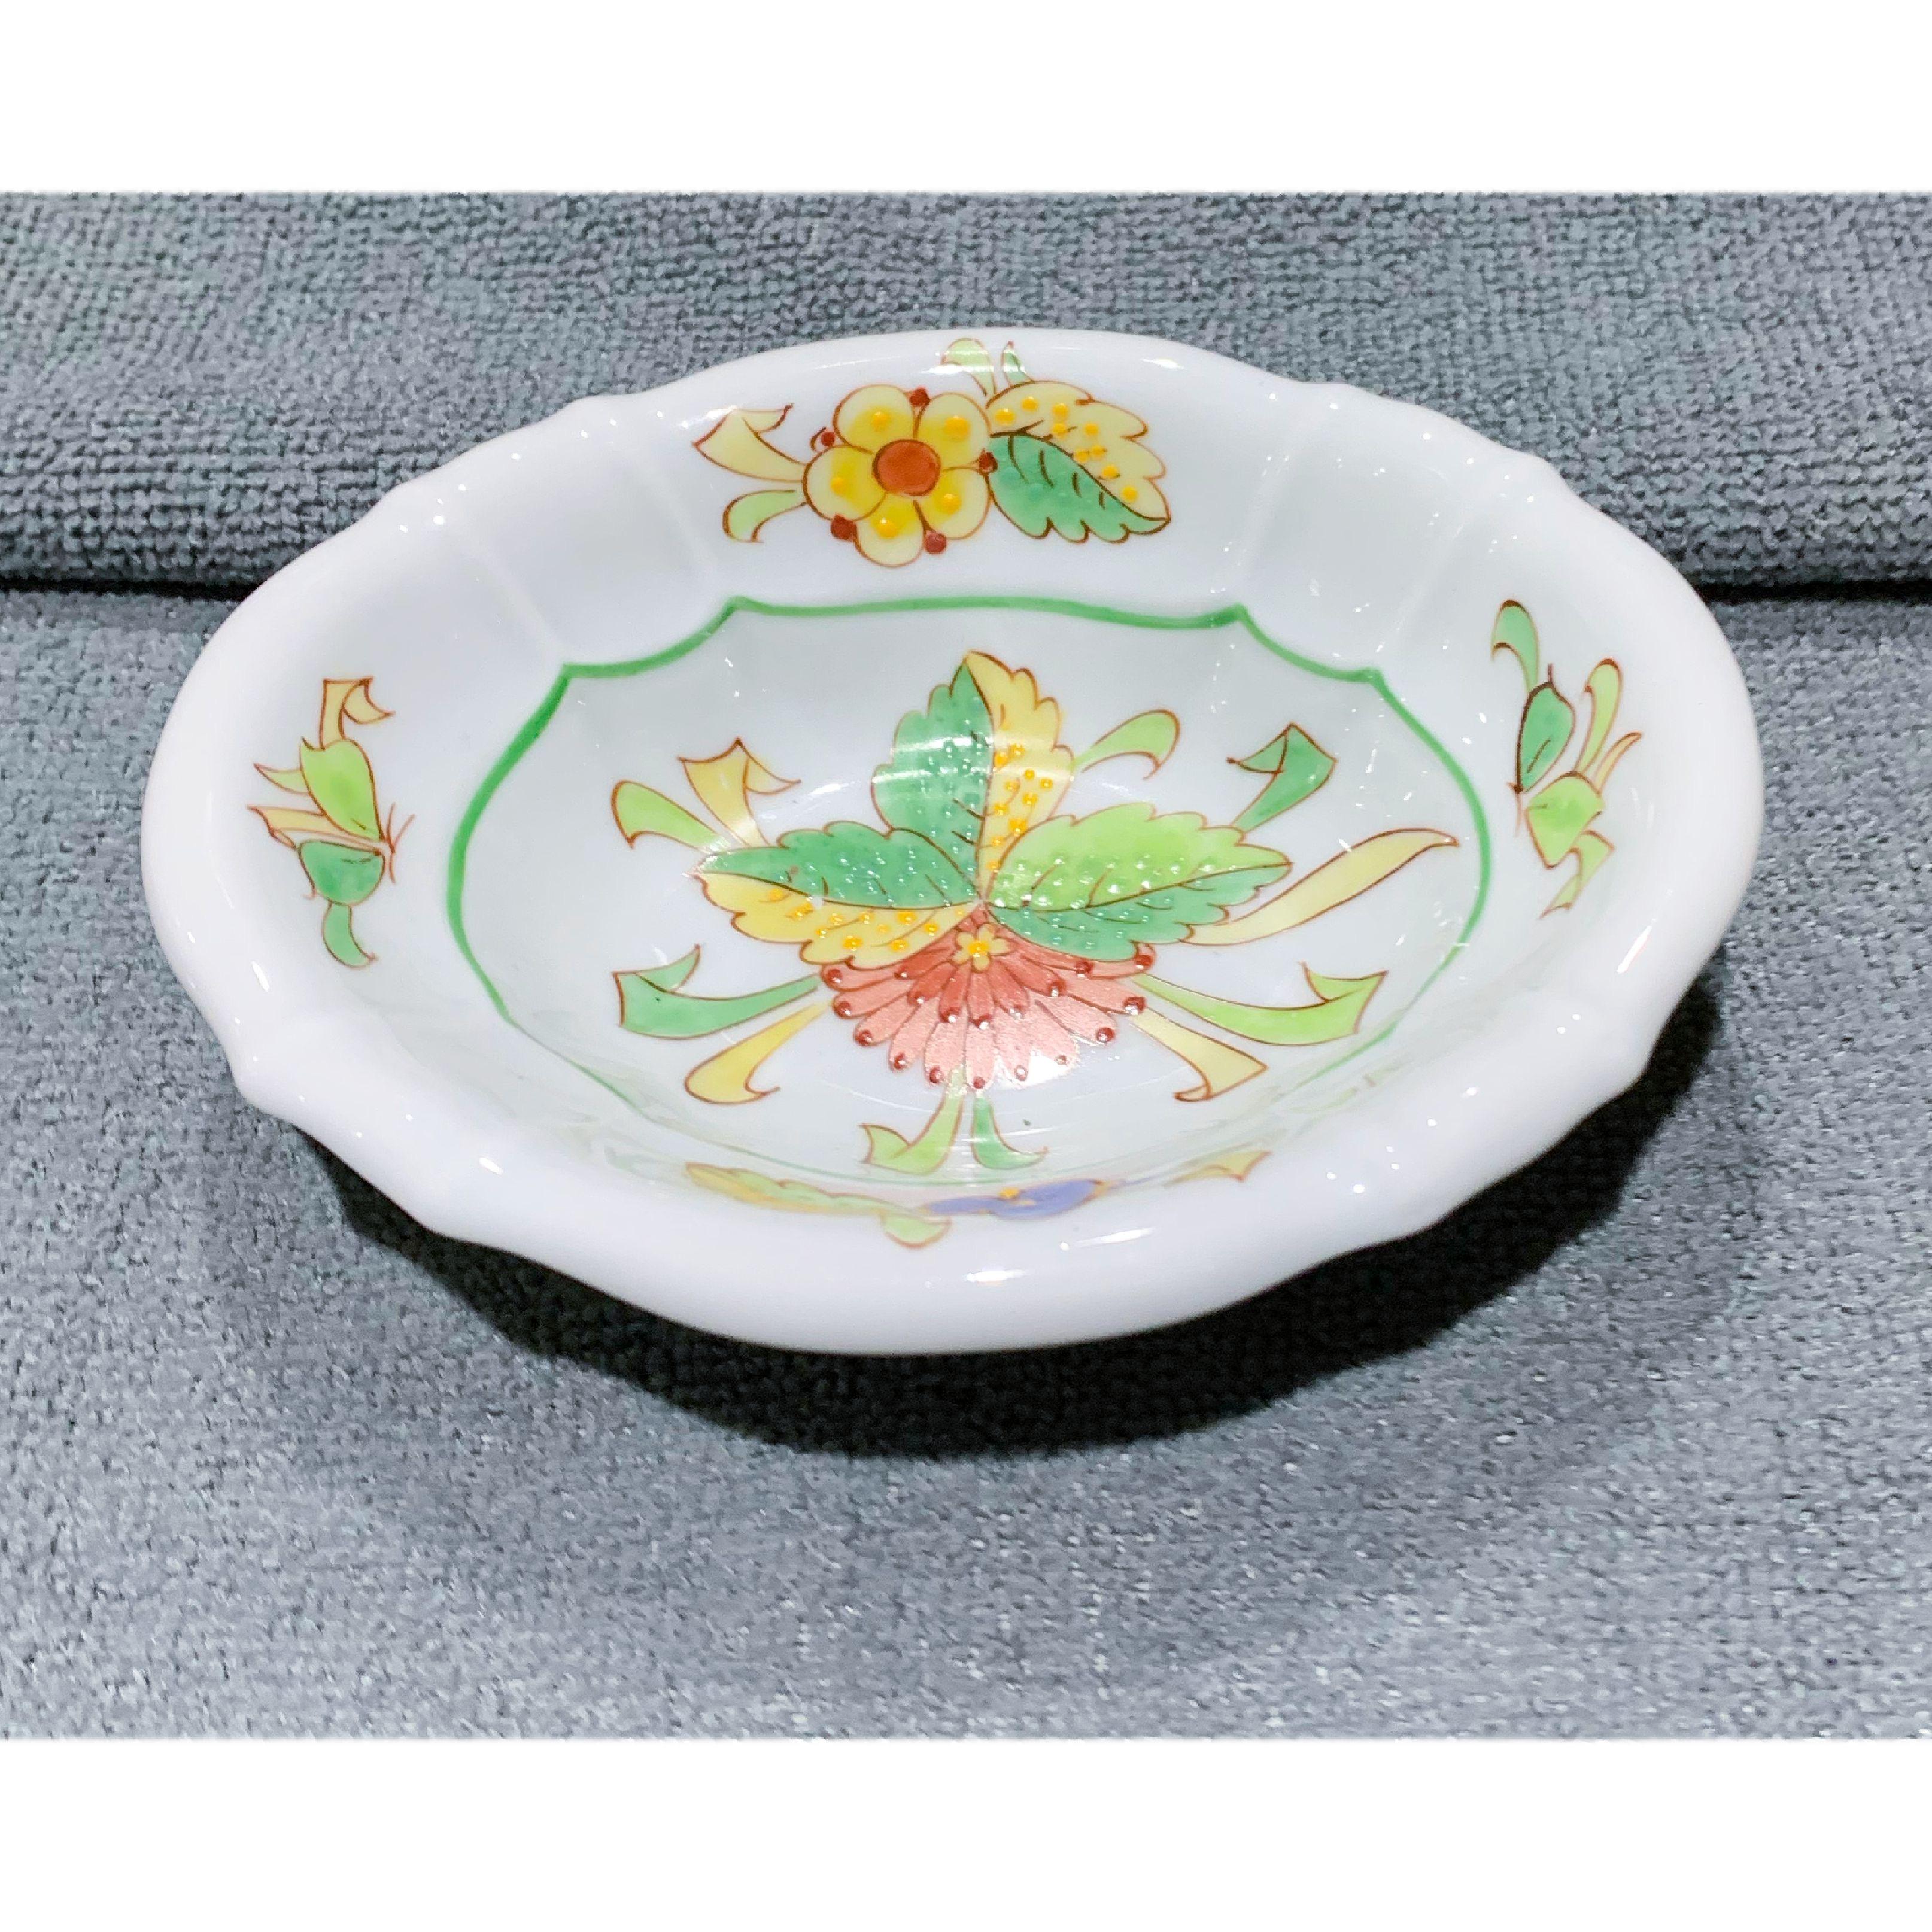 Vintage Sherle Wagner peint à la main porte savon en céramique festonné bouquet de chrysanthèmes. Chine vitrifiée. Objet peint et décoré à la main. Le motif du bouquet de chrysanthèmes est appliqué à la main, après plusieurs cuissons à haute